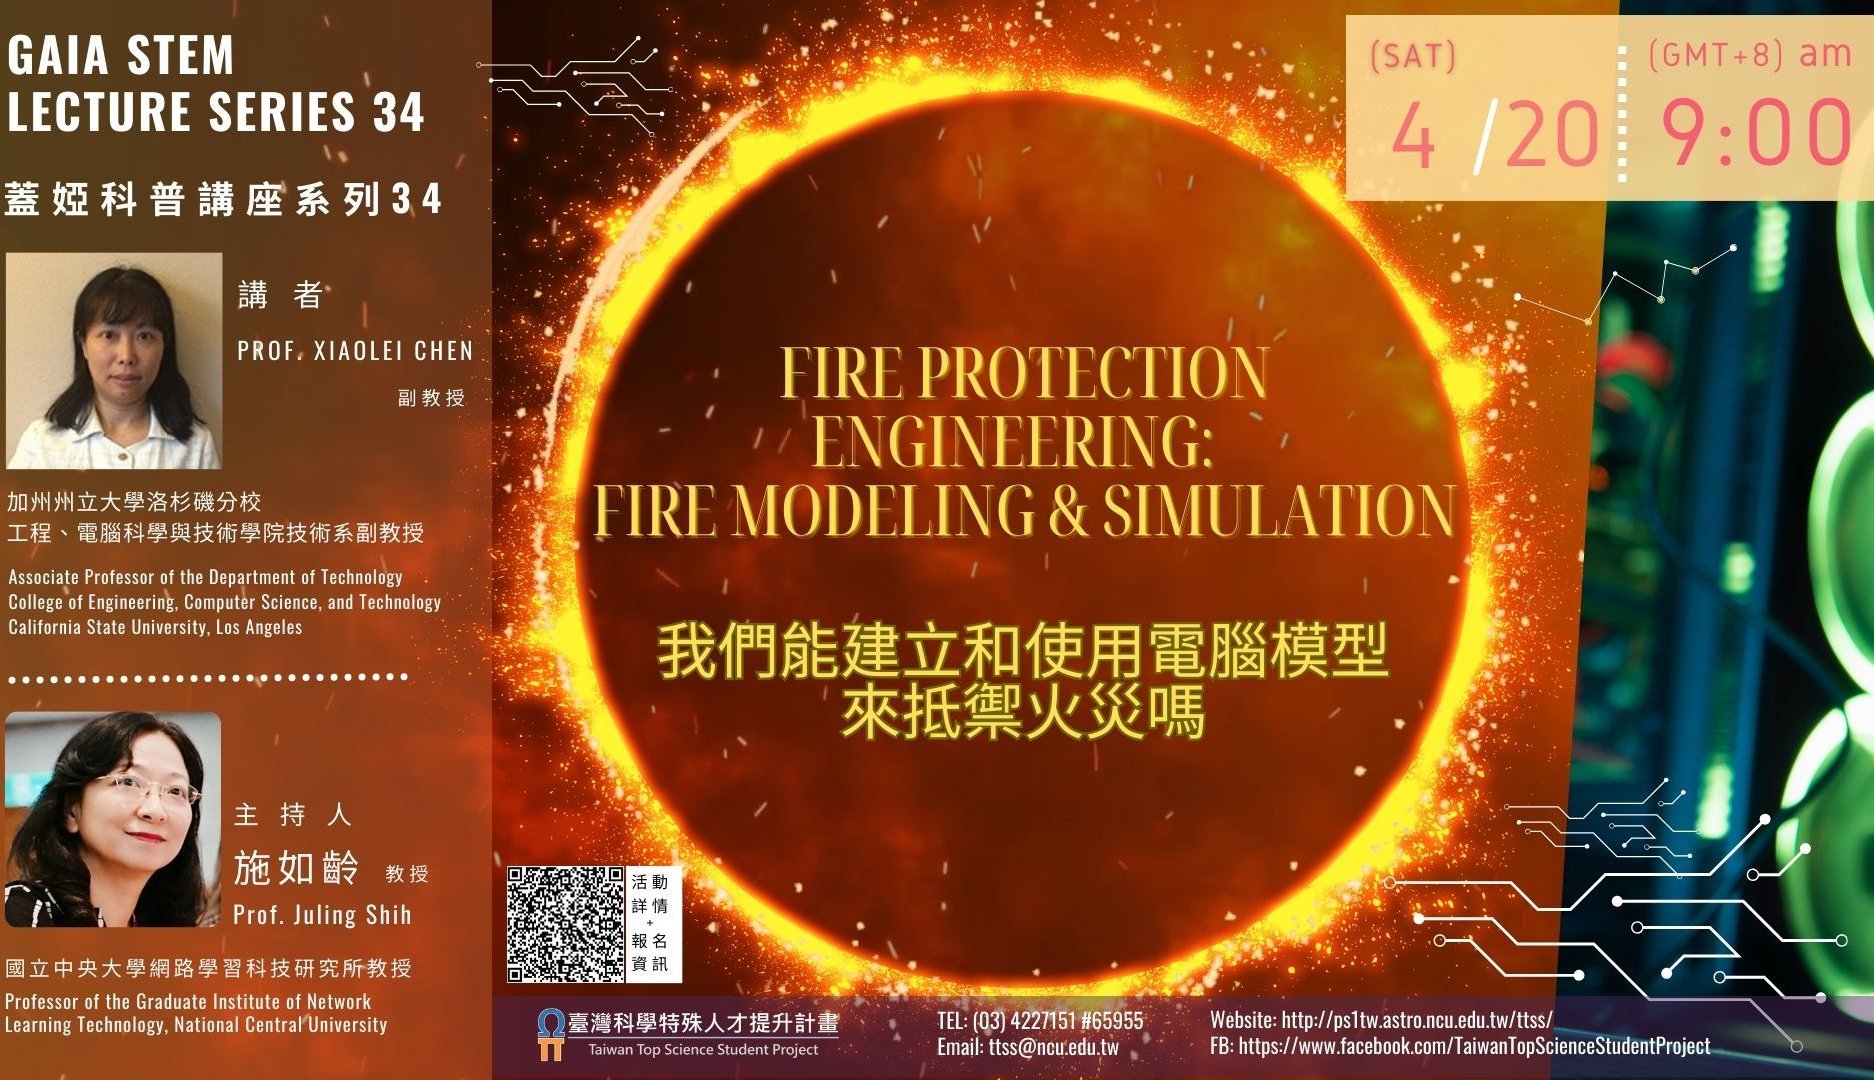 線上講座：《蓋婭科普講座系列34》—— 「我們能建立和使用電腦模型來抵禦火災嗎？」